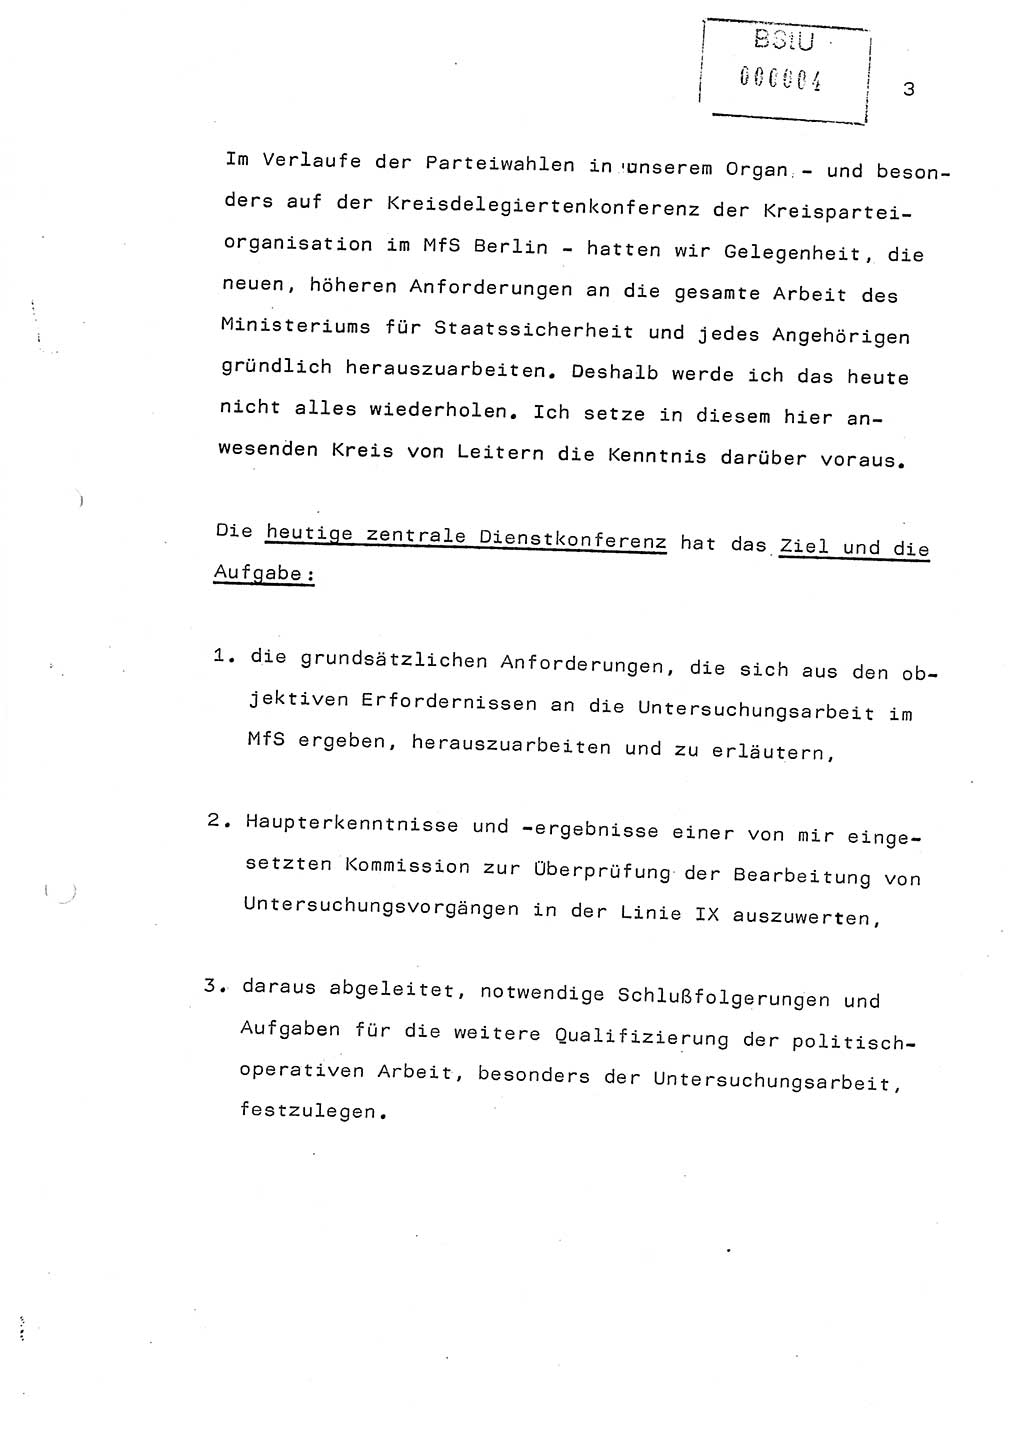 Referat (Generaloberst Erich Mielke) auf der Zentralen Dienstkonferenz am 24.5.1979 [Ministerium für Staatssicherheit (MfS), Deutsche Demokratische Republik (DDR), Der Minister], Berlin 1979, Seite 3 (Ref. DK DDR MfS Min. /79 1979, S. 3)